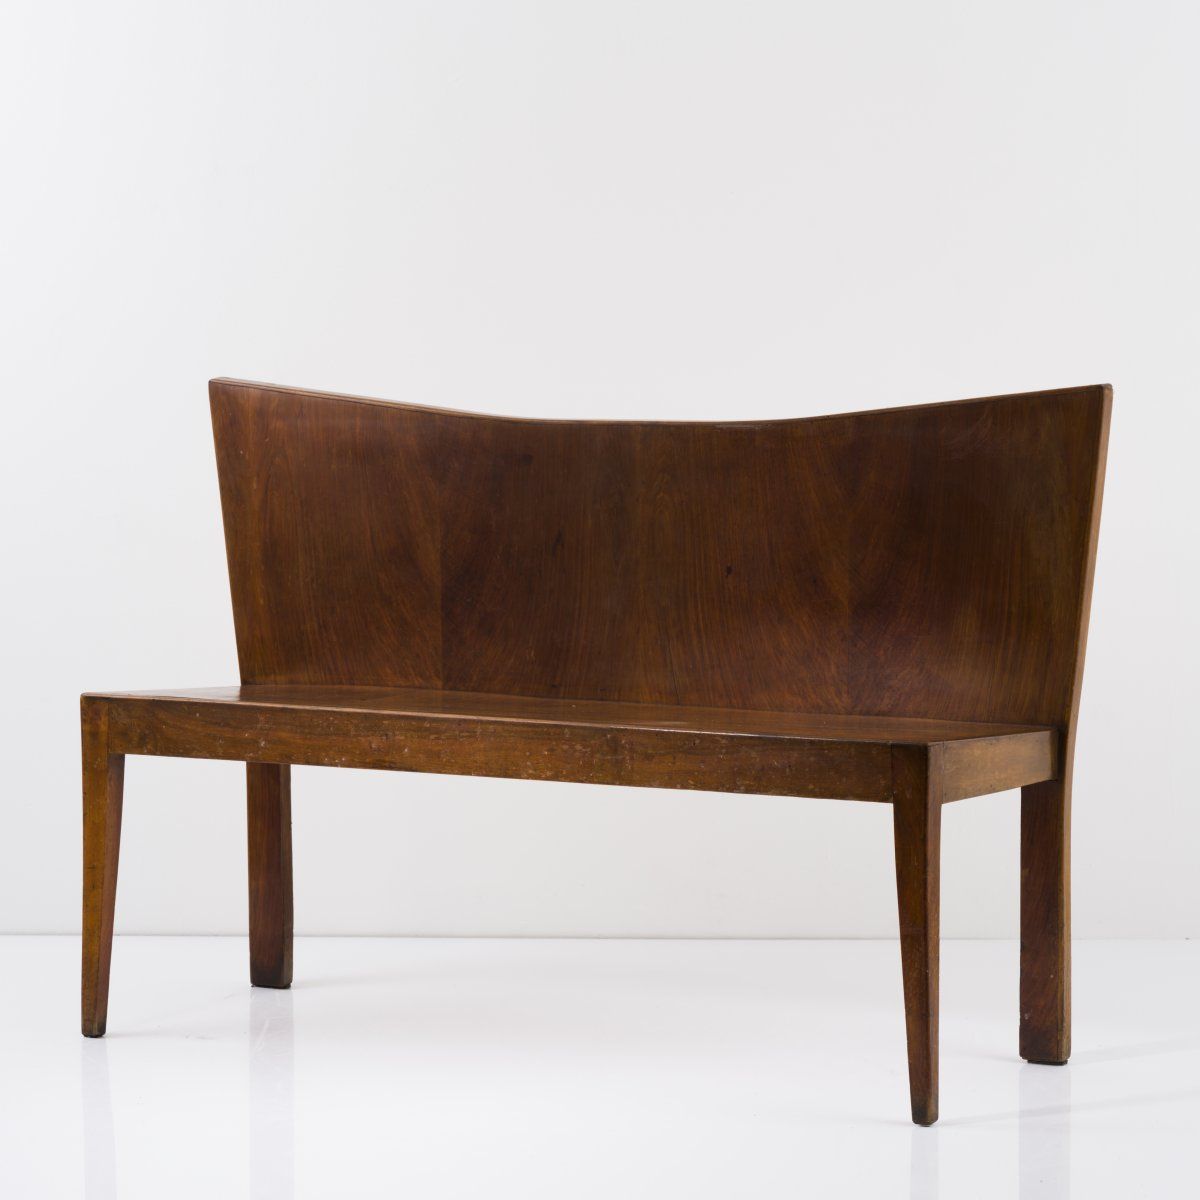 Null 意大利，长椅，约1950年，高83 x 128.5 x 43厘米。胡桃木，胡桃木贴面的胶合板，深色染色。